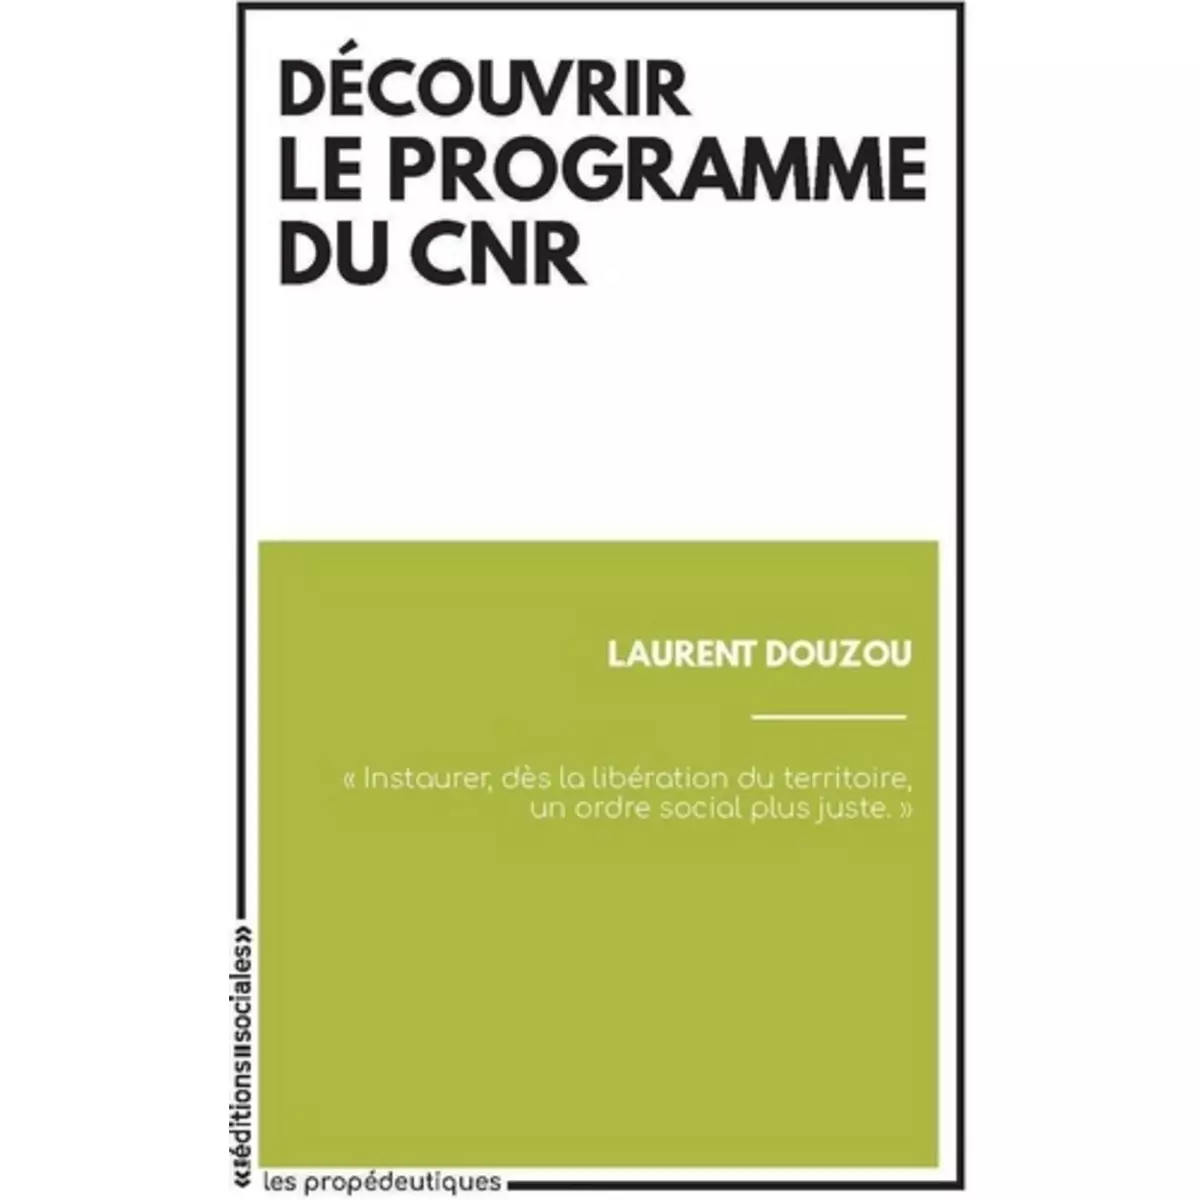  DECOUVRIR LE PROGRAMME DU CNR, Douzou Laurent